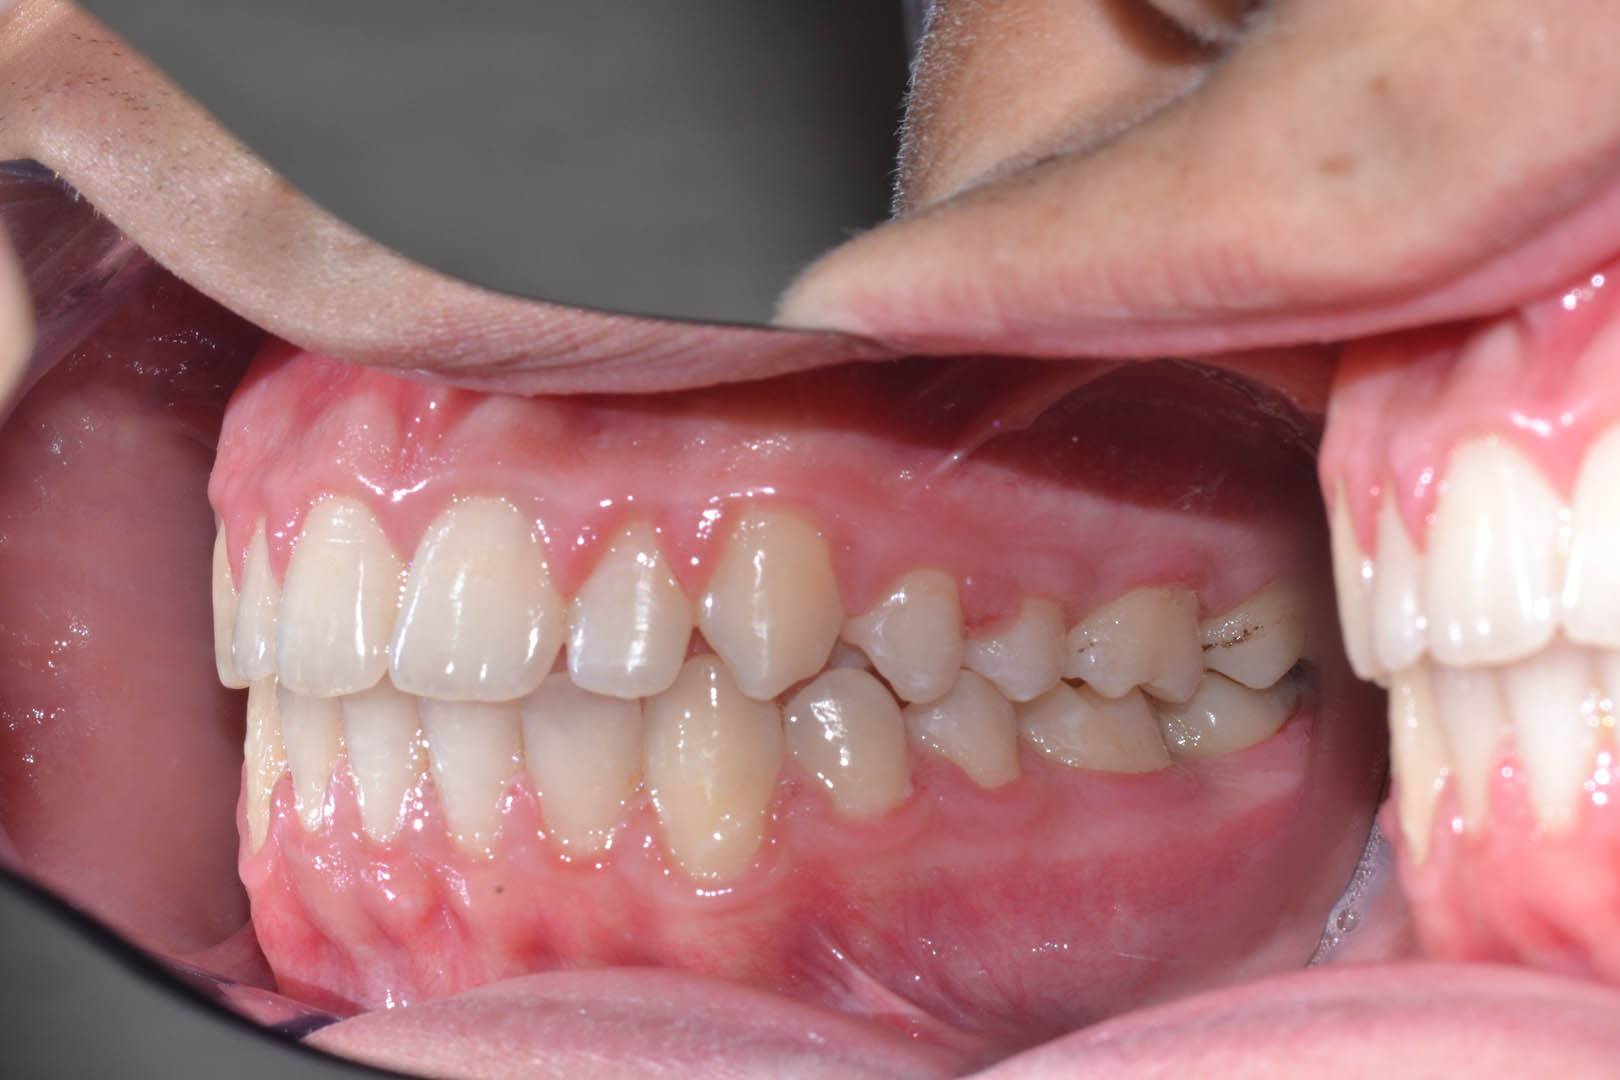 odontocentro-monza-brianza-casi-clinici-ortodonzia-fissa-20-mesi (9)